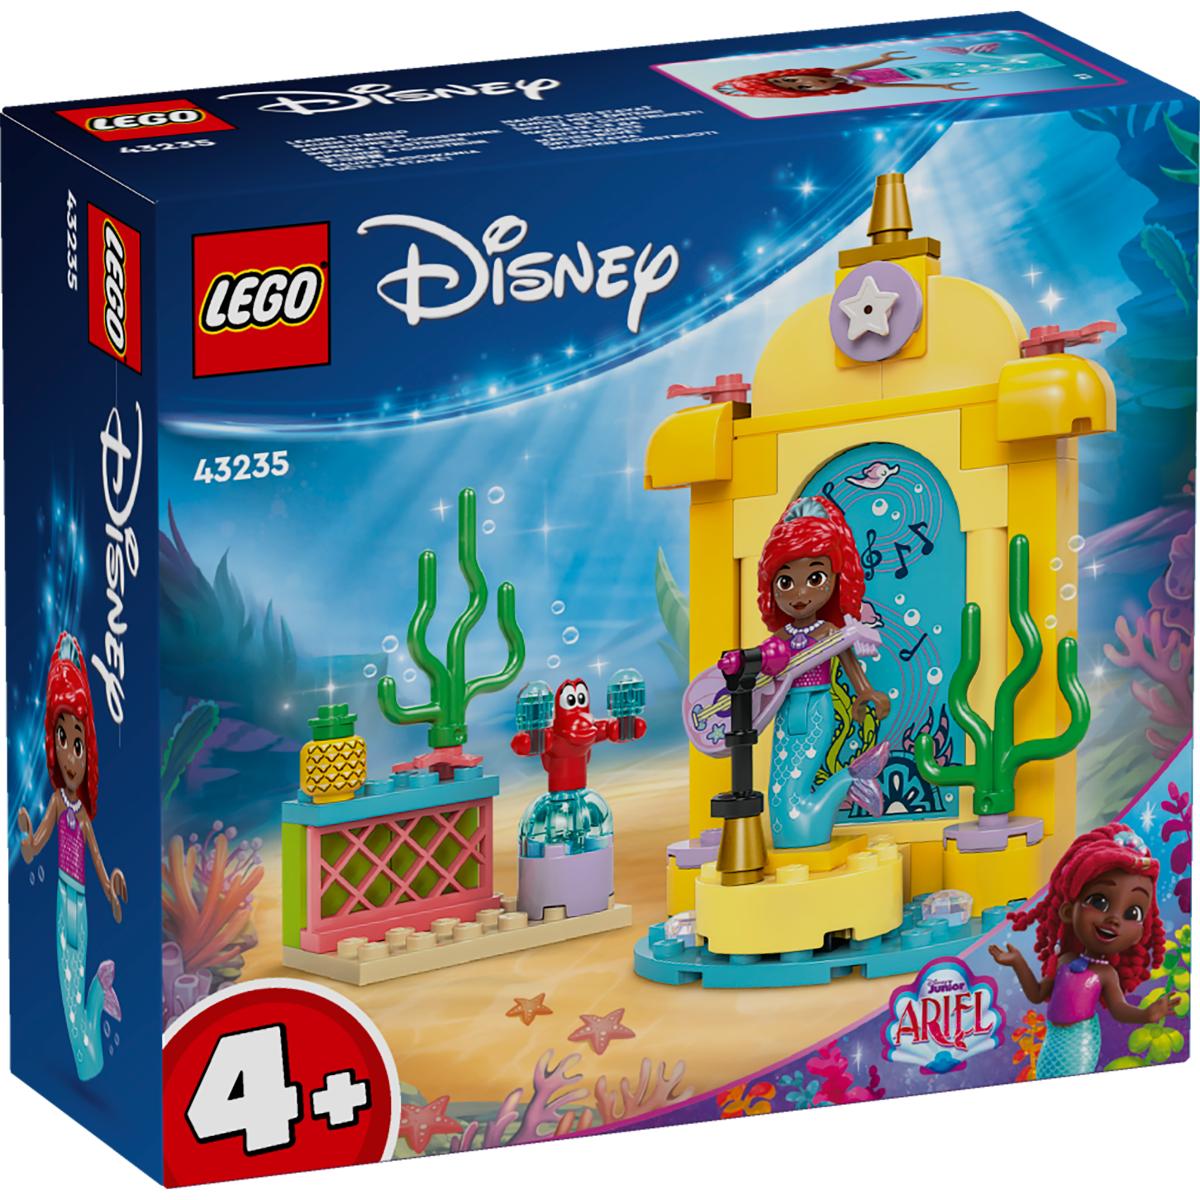 LEGOÂ® Disney Princess - Scena muzicala a lui Ariel (43235)